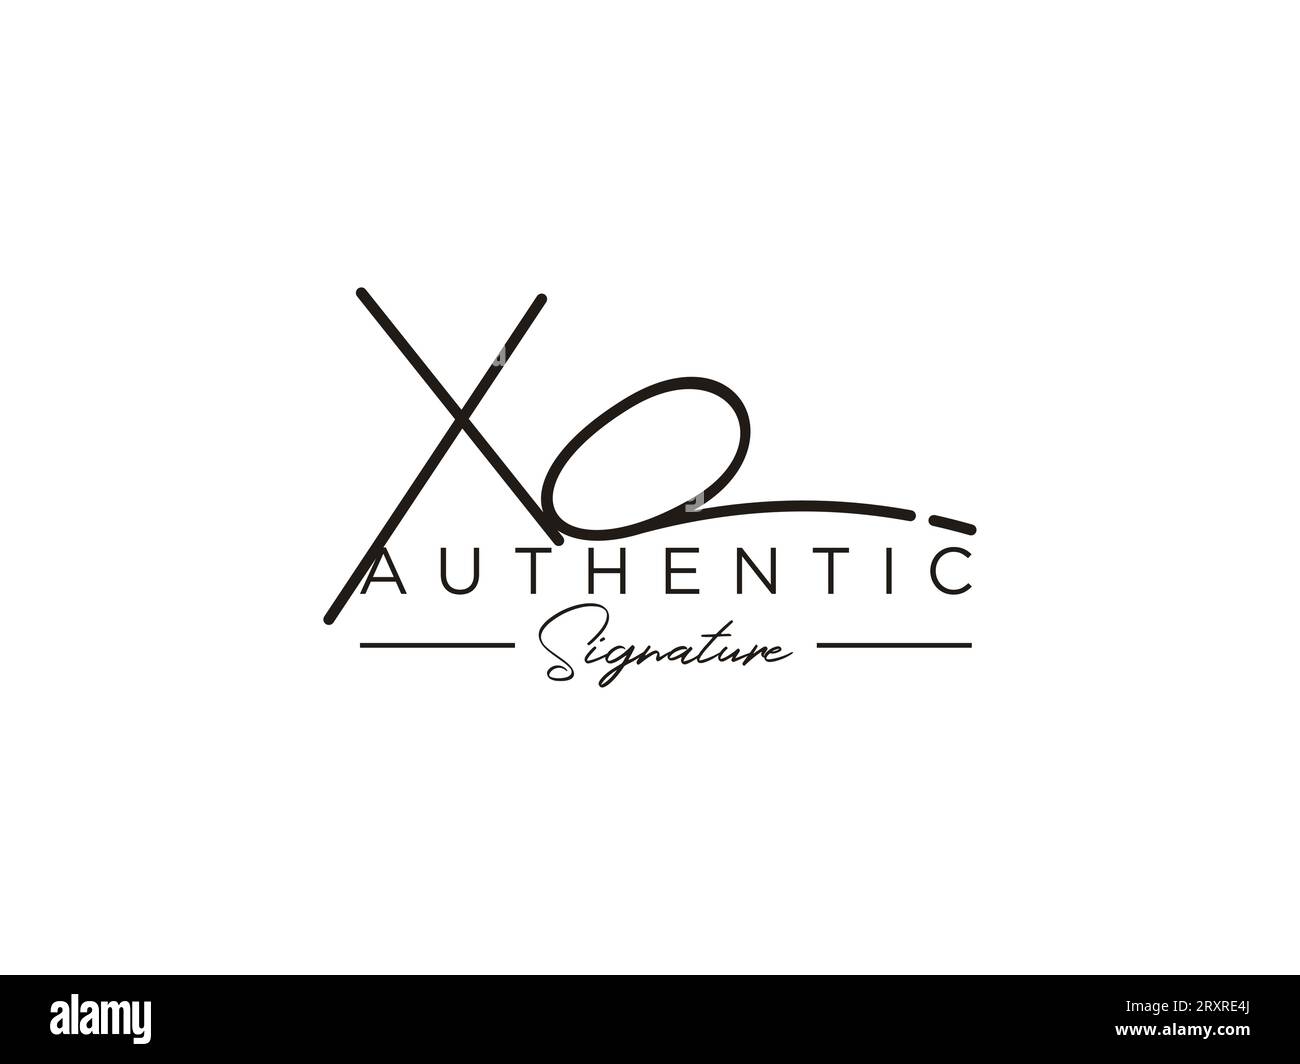 XO Signature Logo Template Vector. Stock Vector